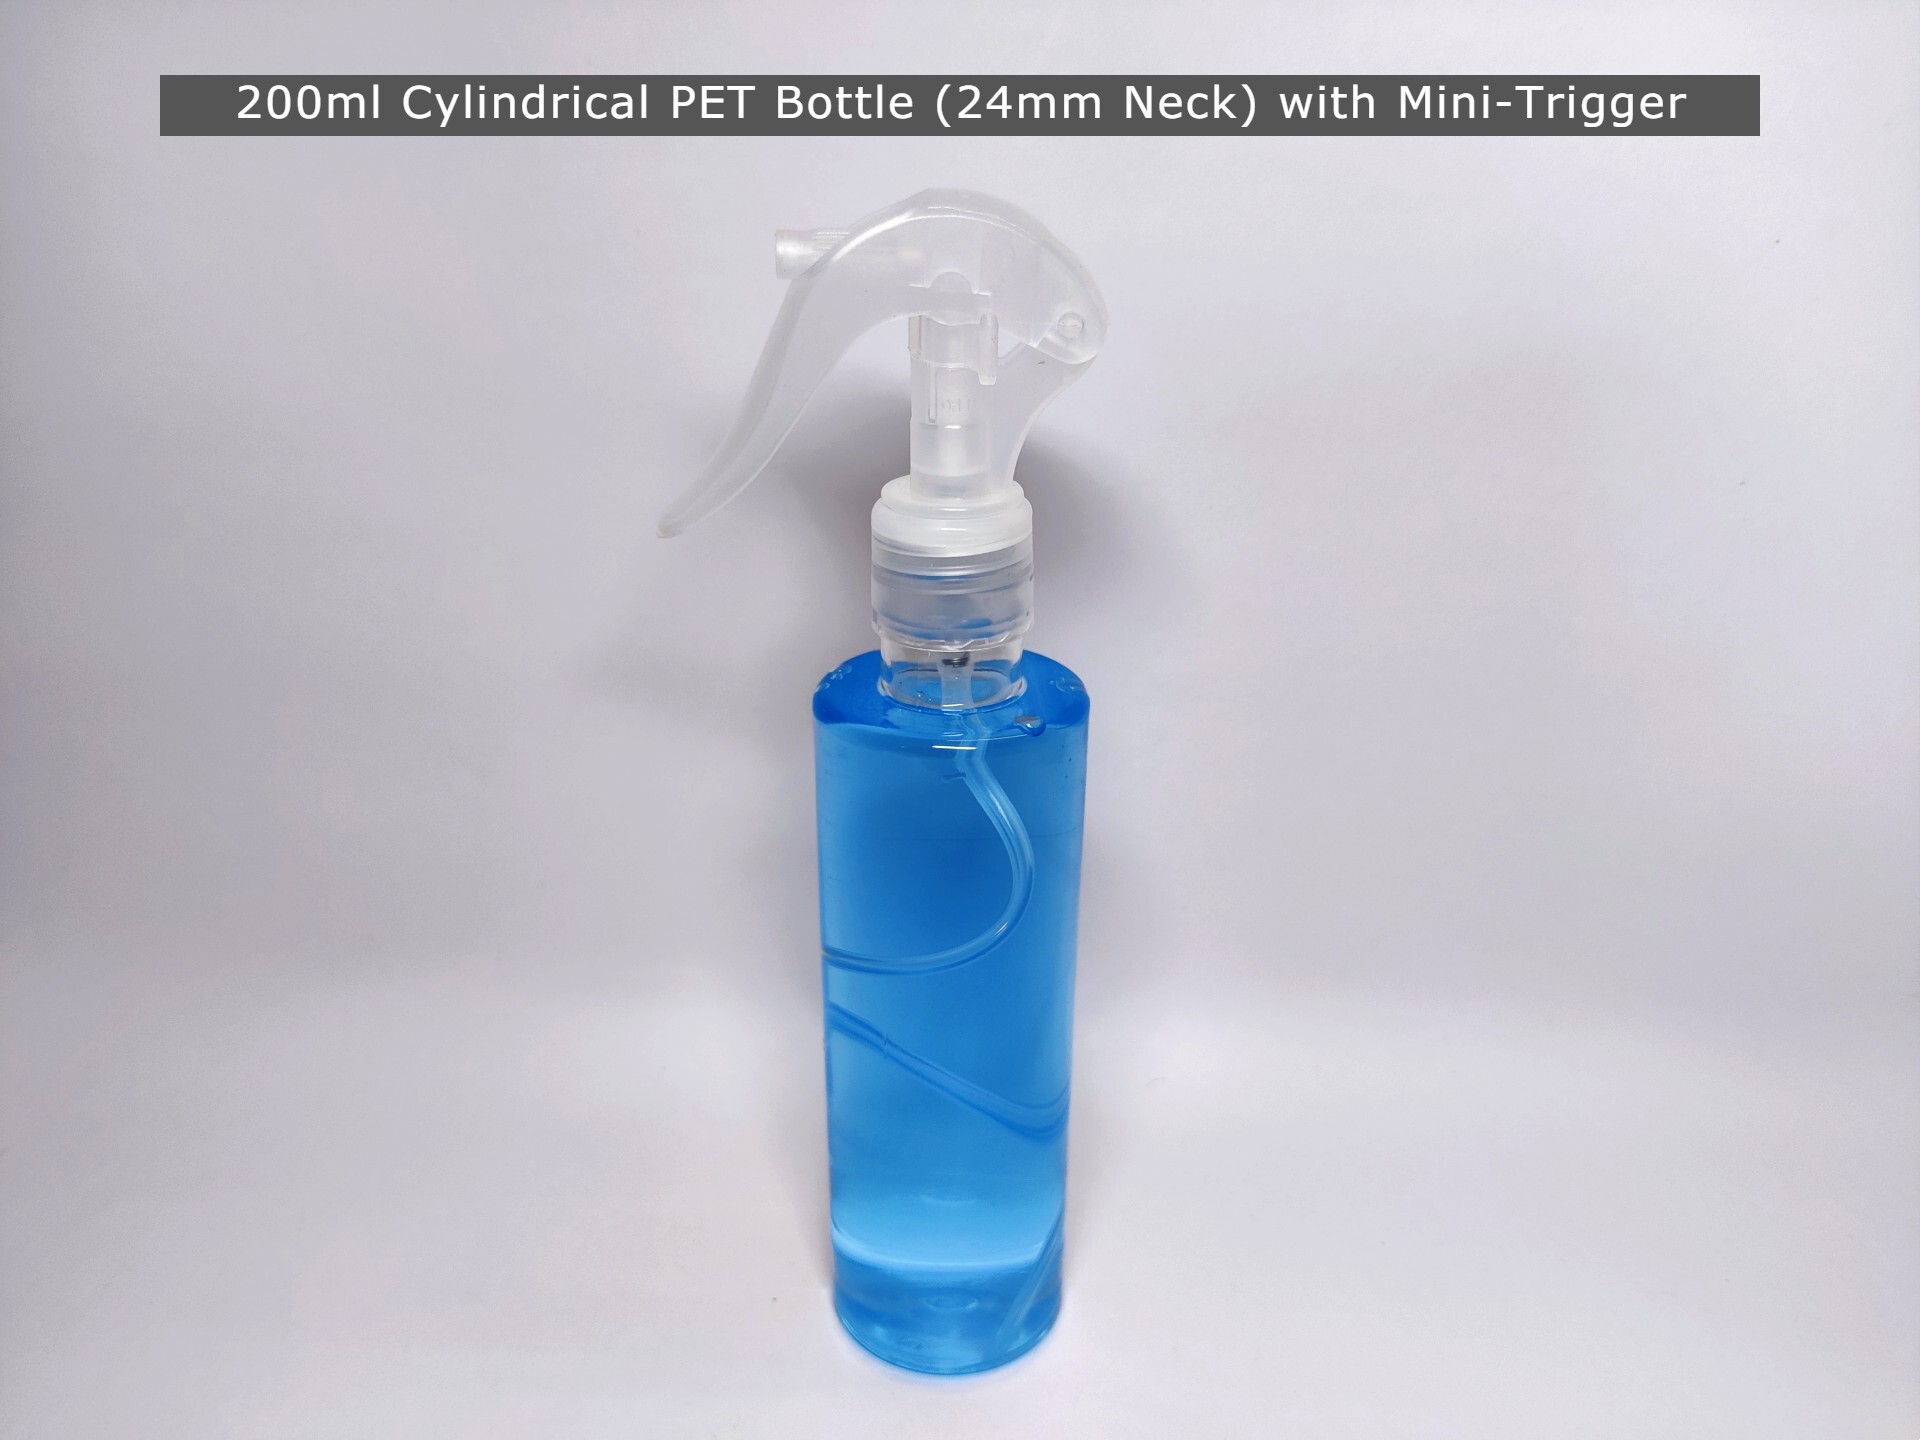 Glass Cleaner Pet Bottle